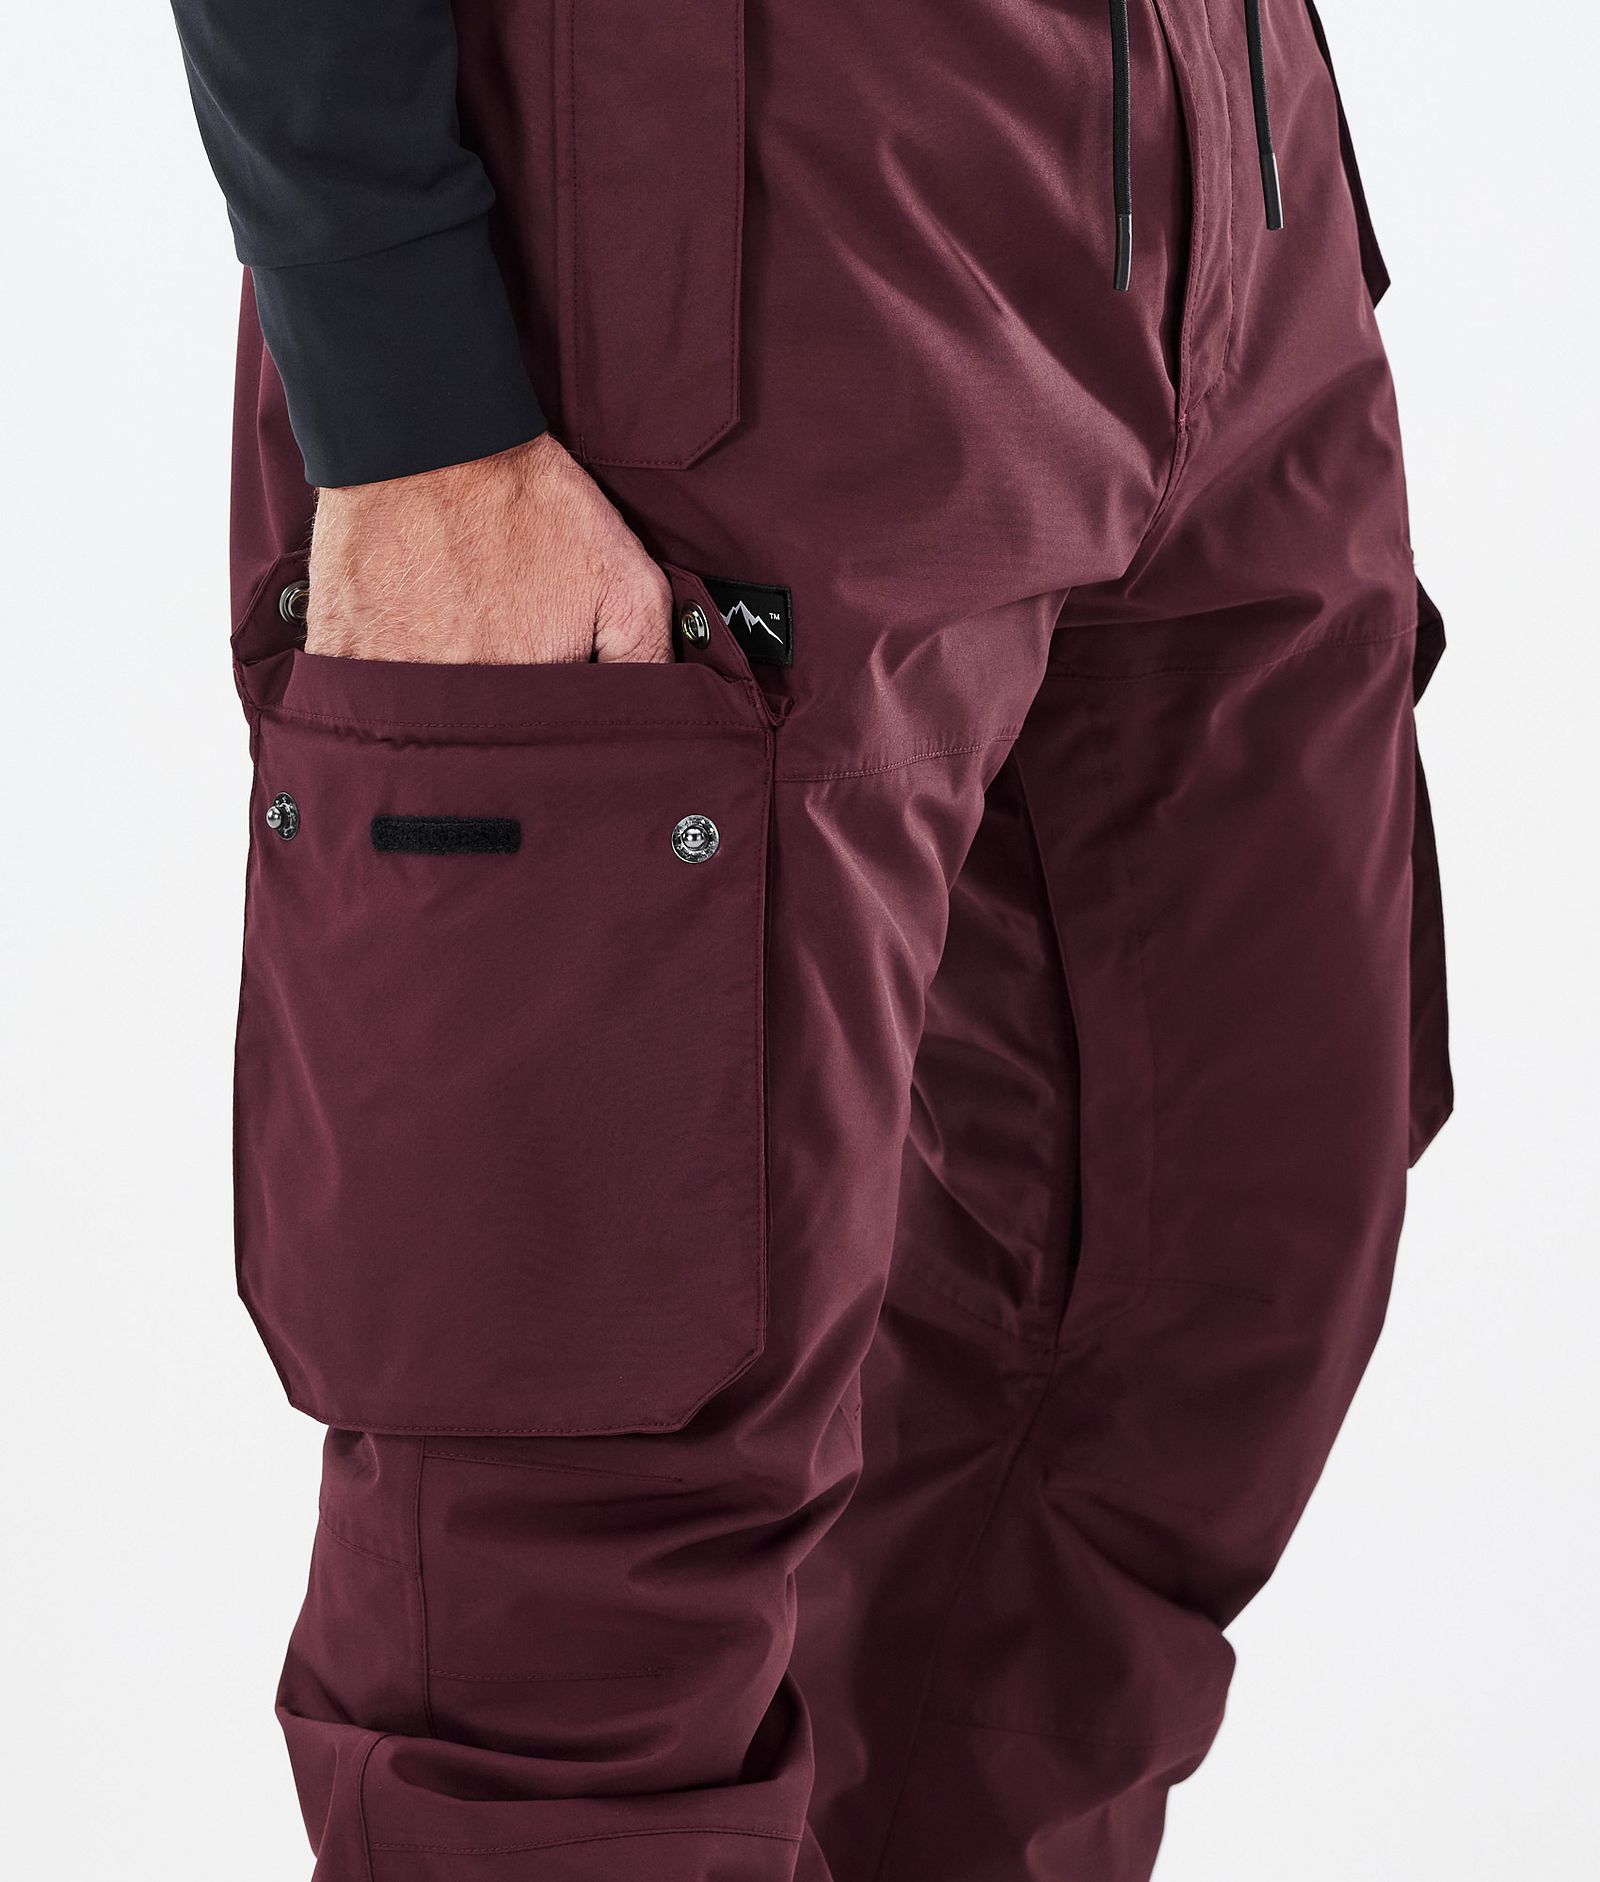 Dope Iconic Kalhoty na Snowboard Pánské Don Burgundy